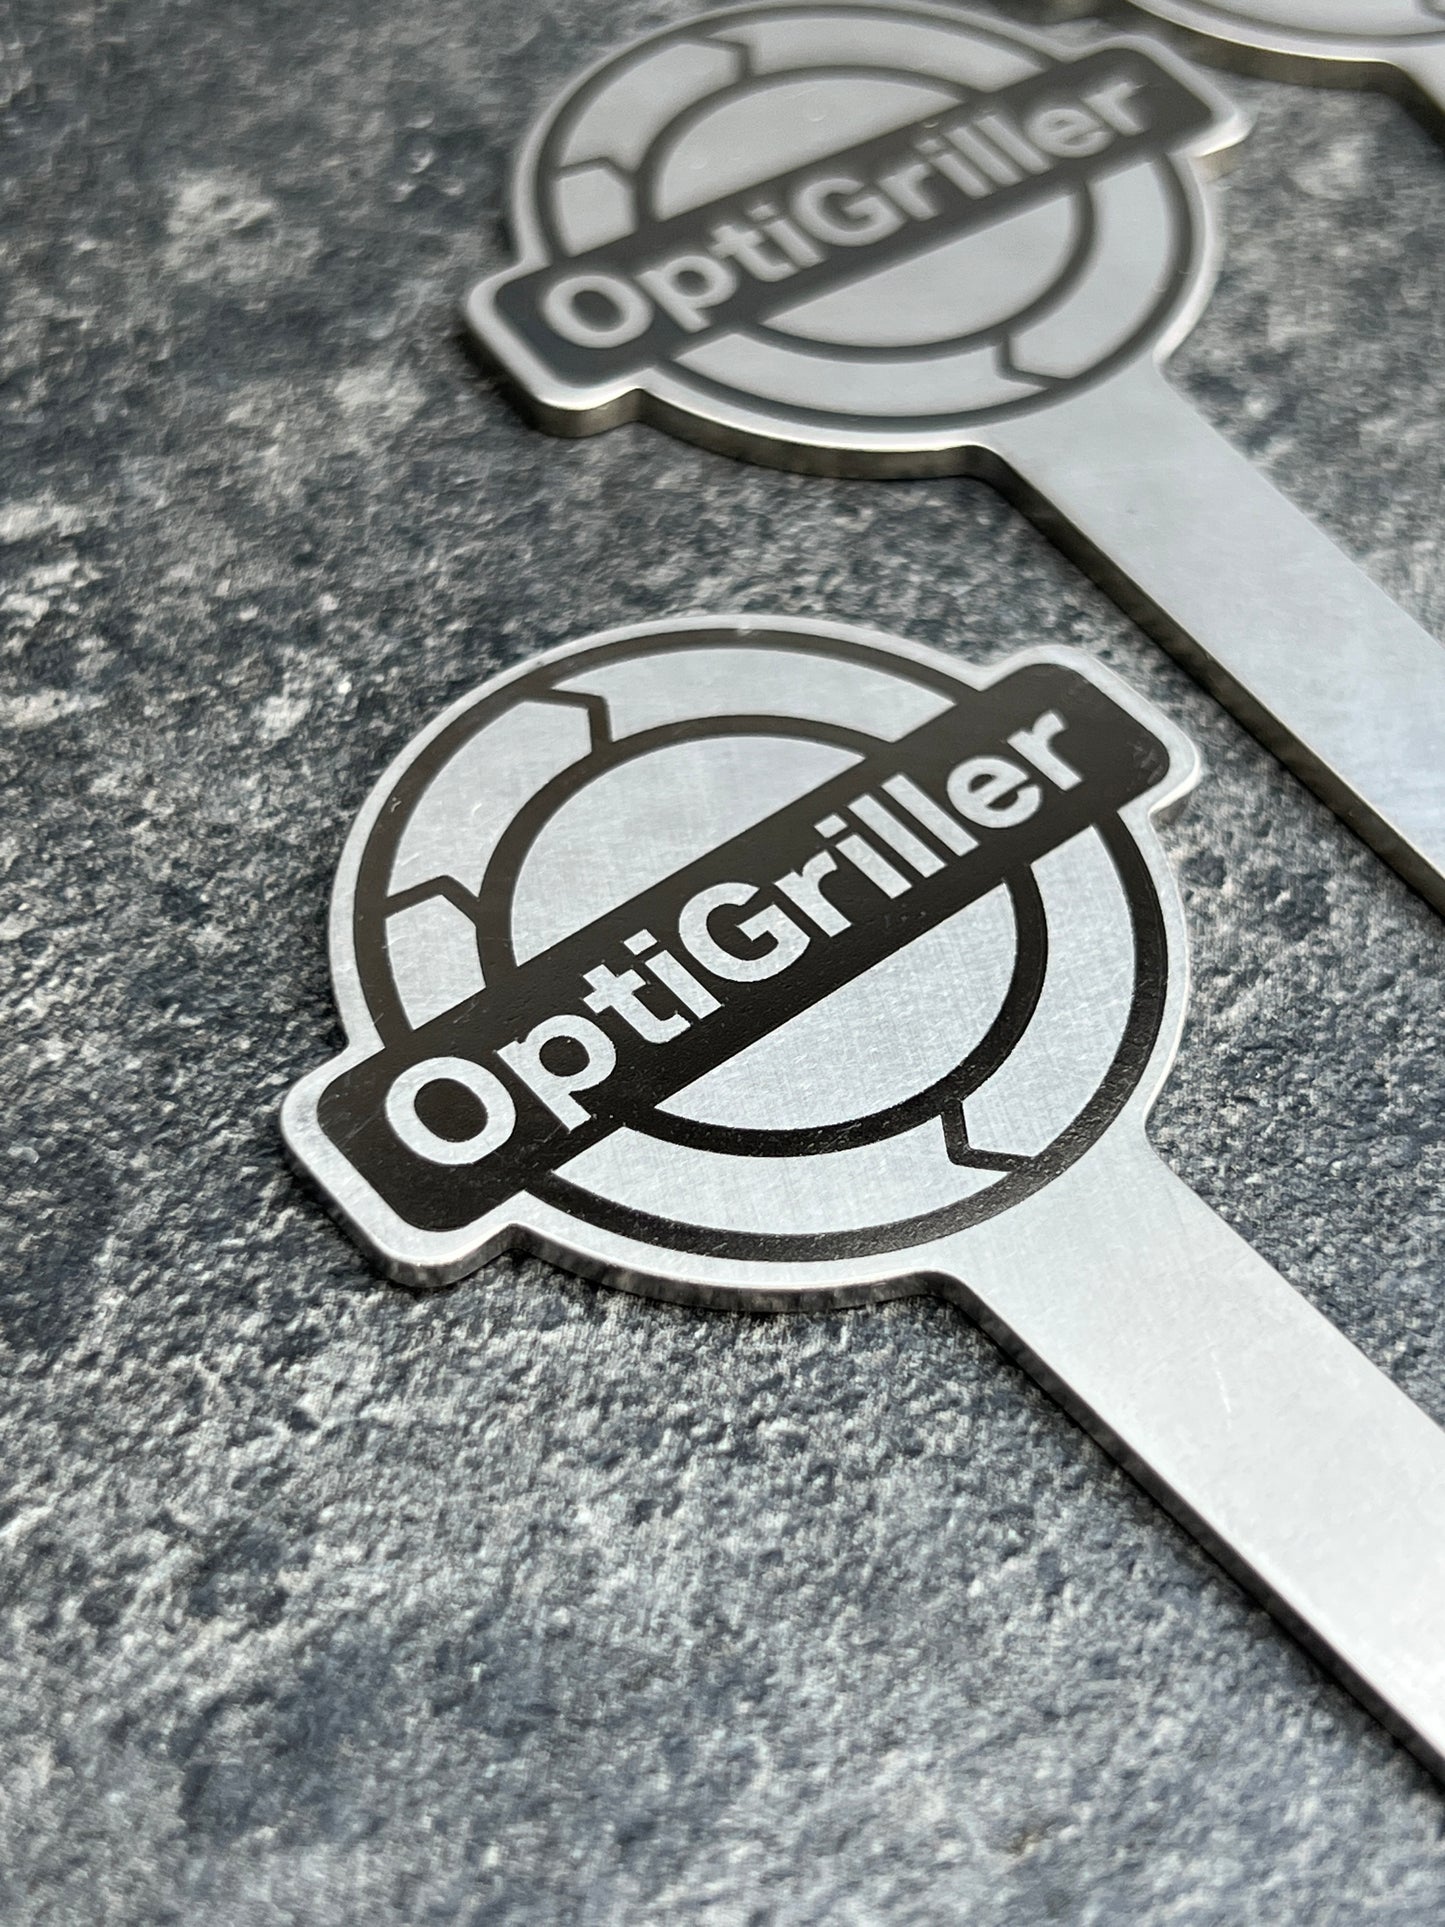 OptiGriller Burgerspieße 4er-Set